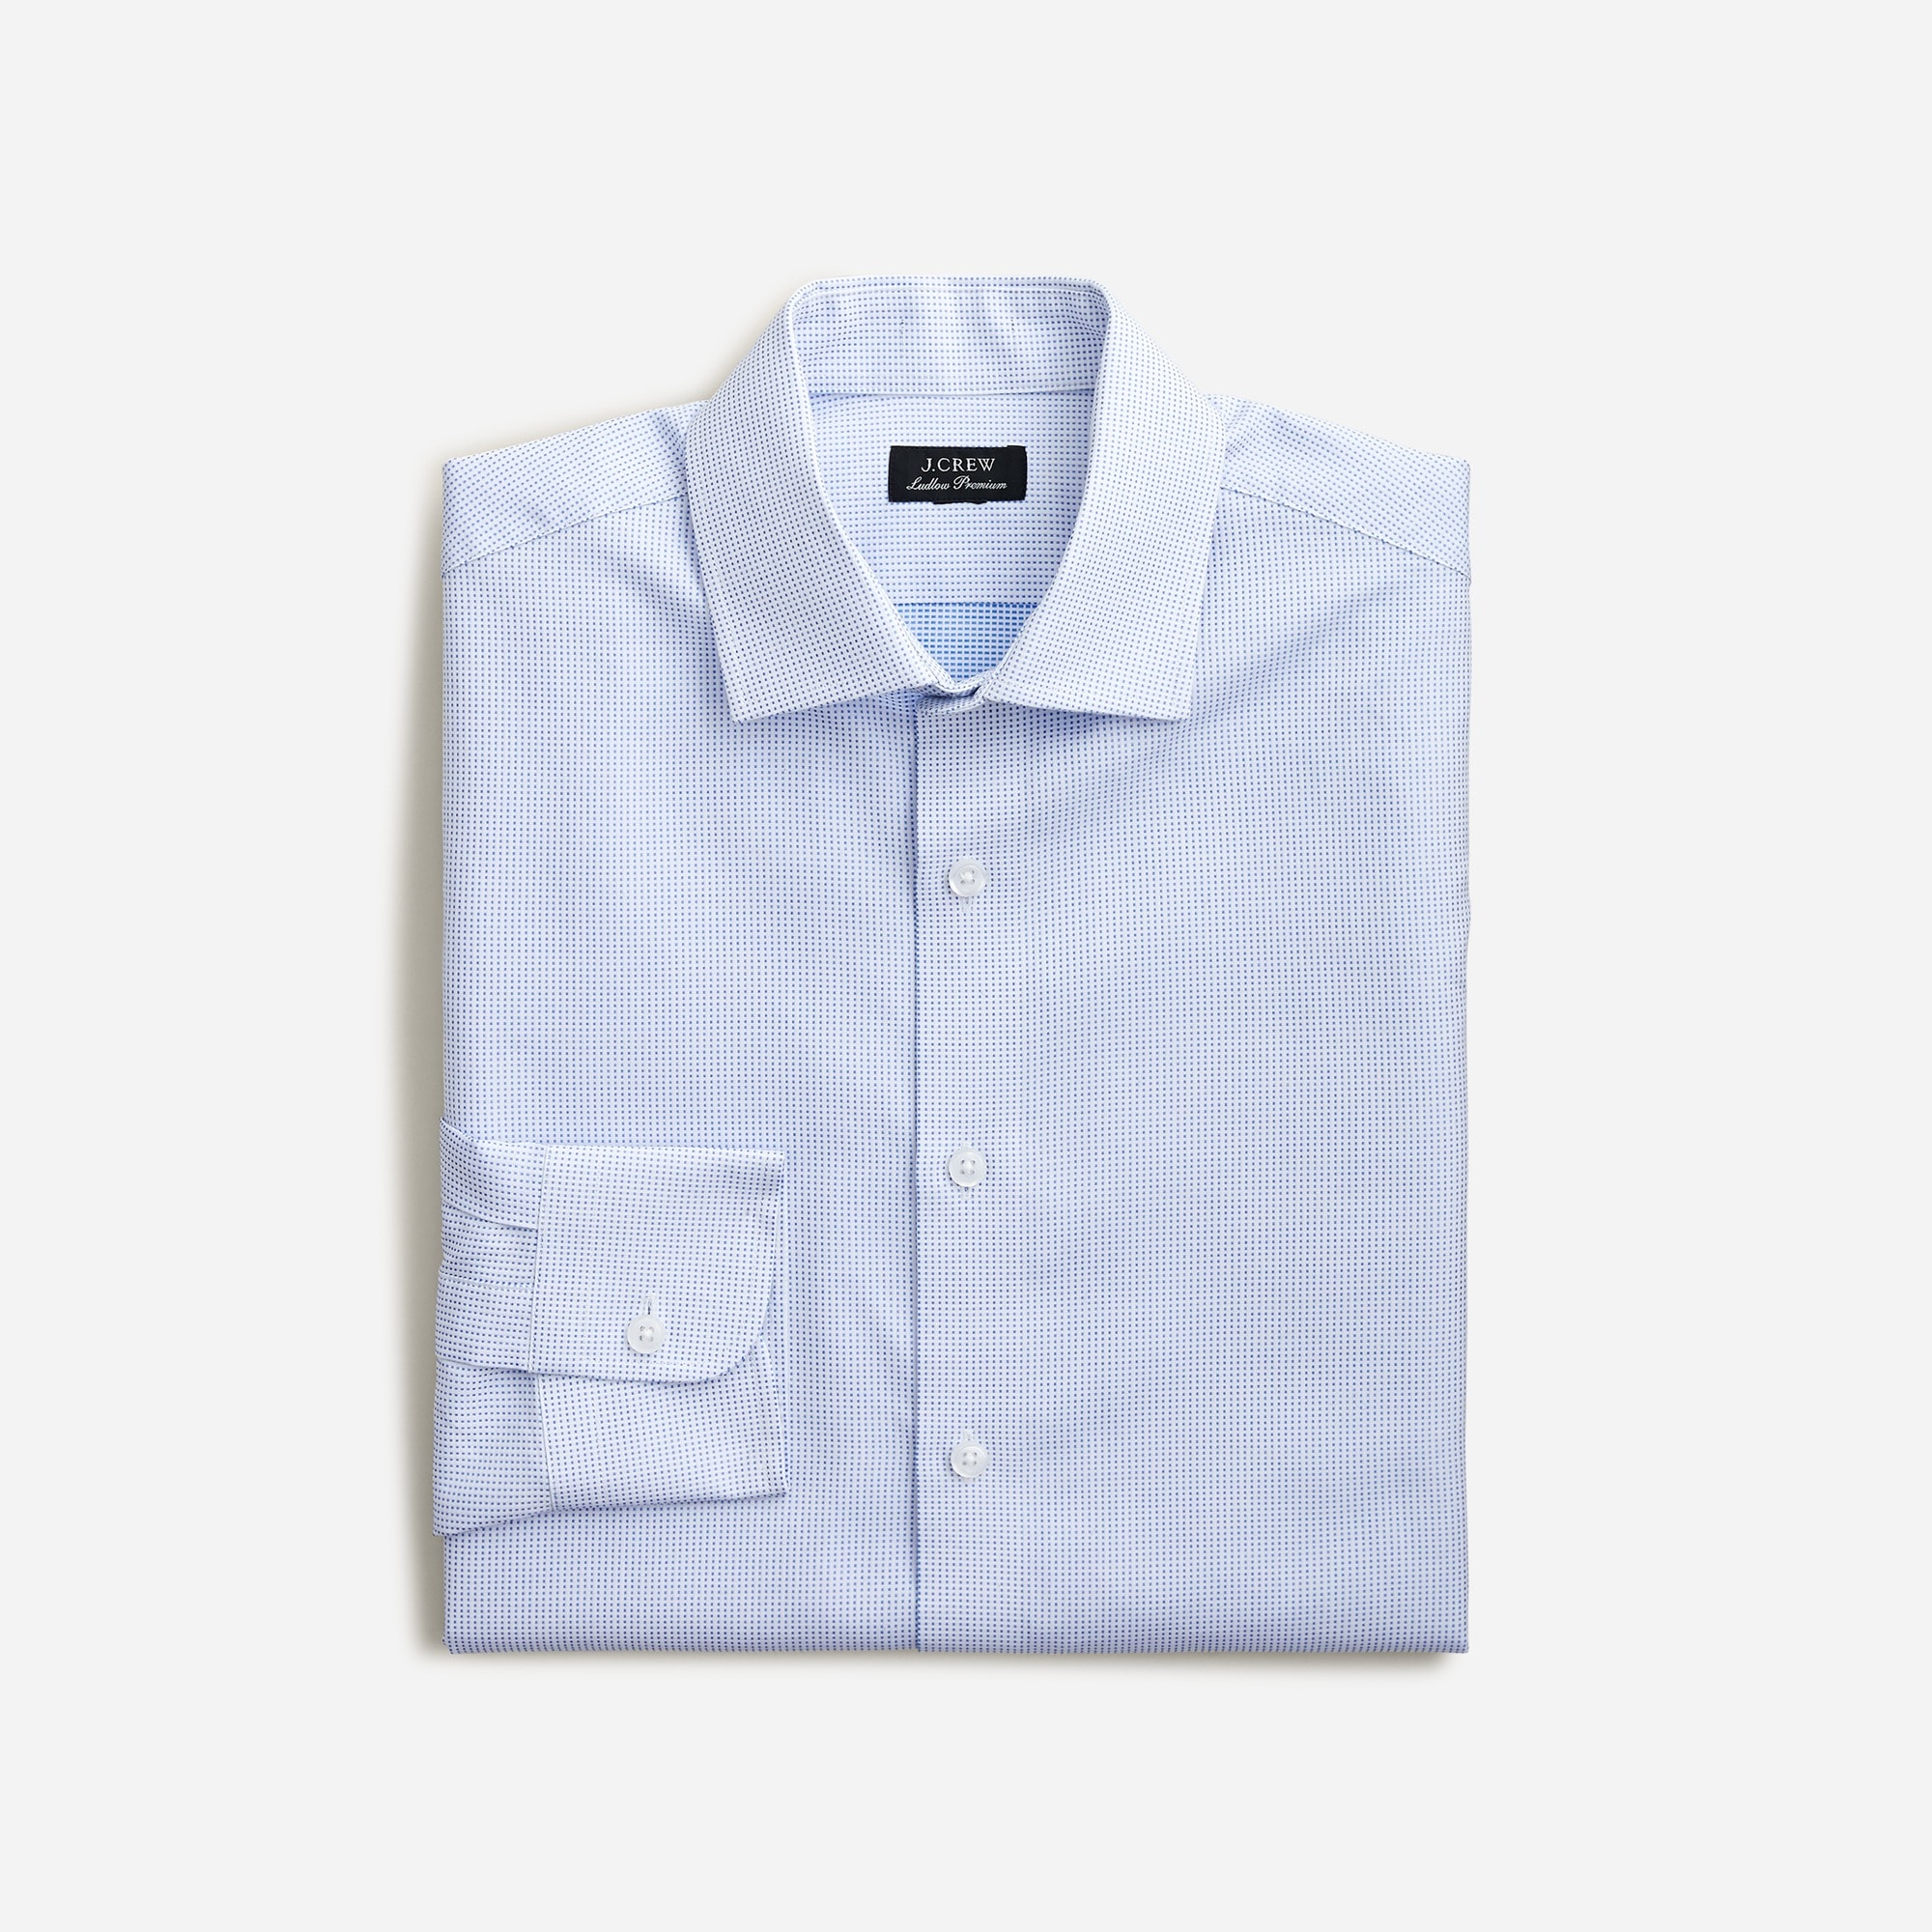 Jcrew Slim-fit Ludlow Premium fine cotton dress shirt in dobby